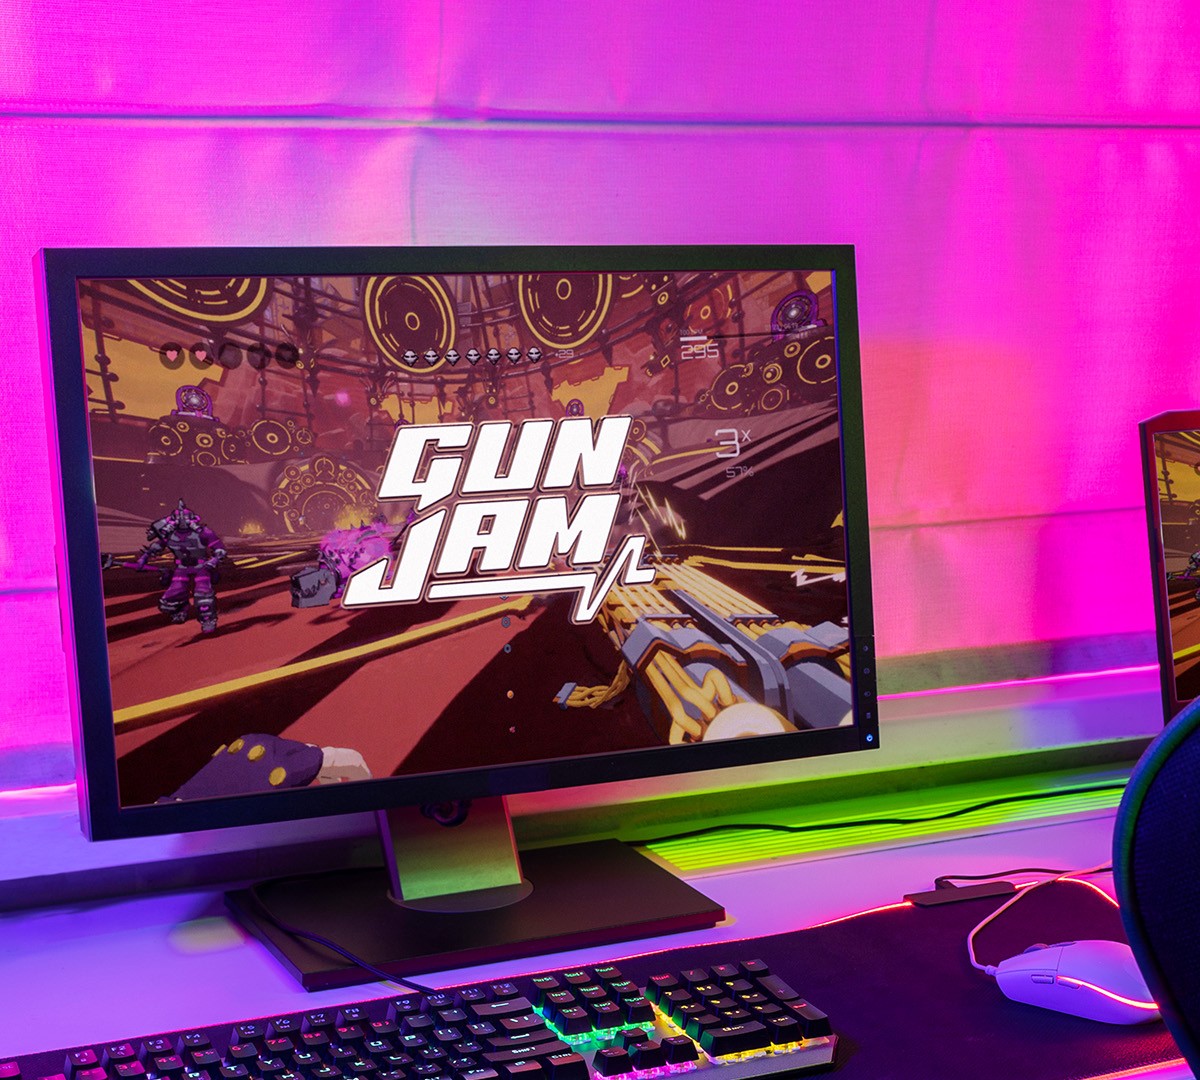 Gun Jam entrega ritmo frenético para misturar FPS com música